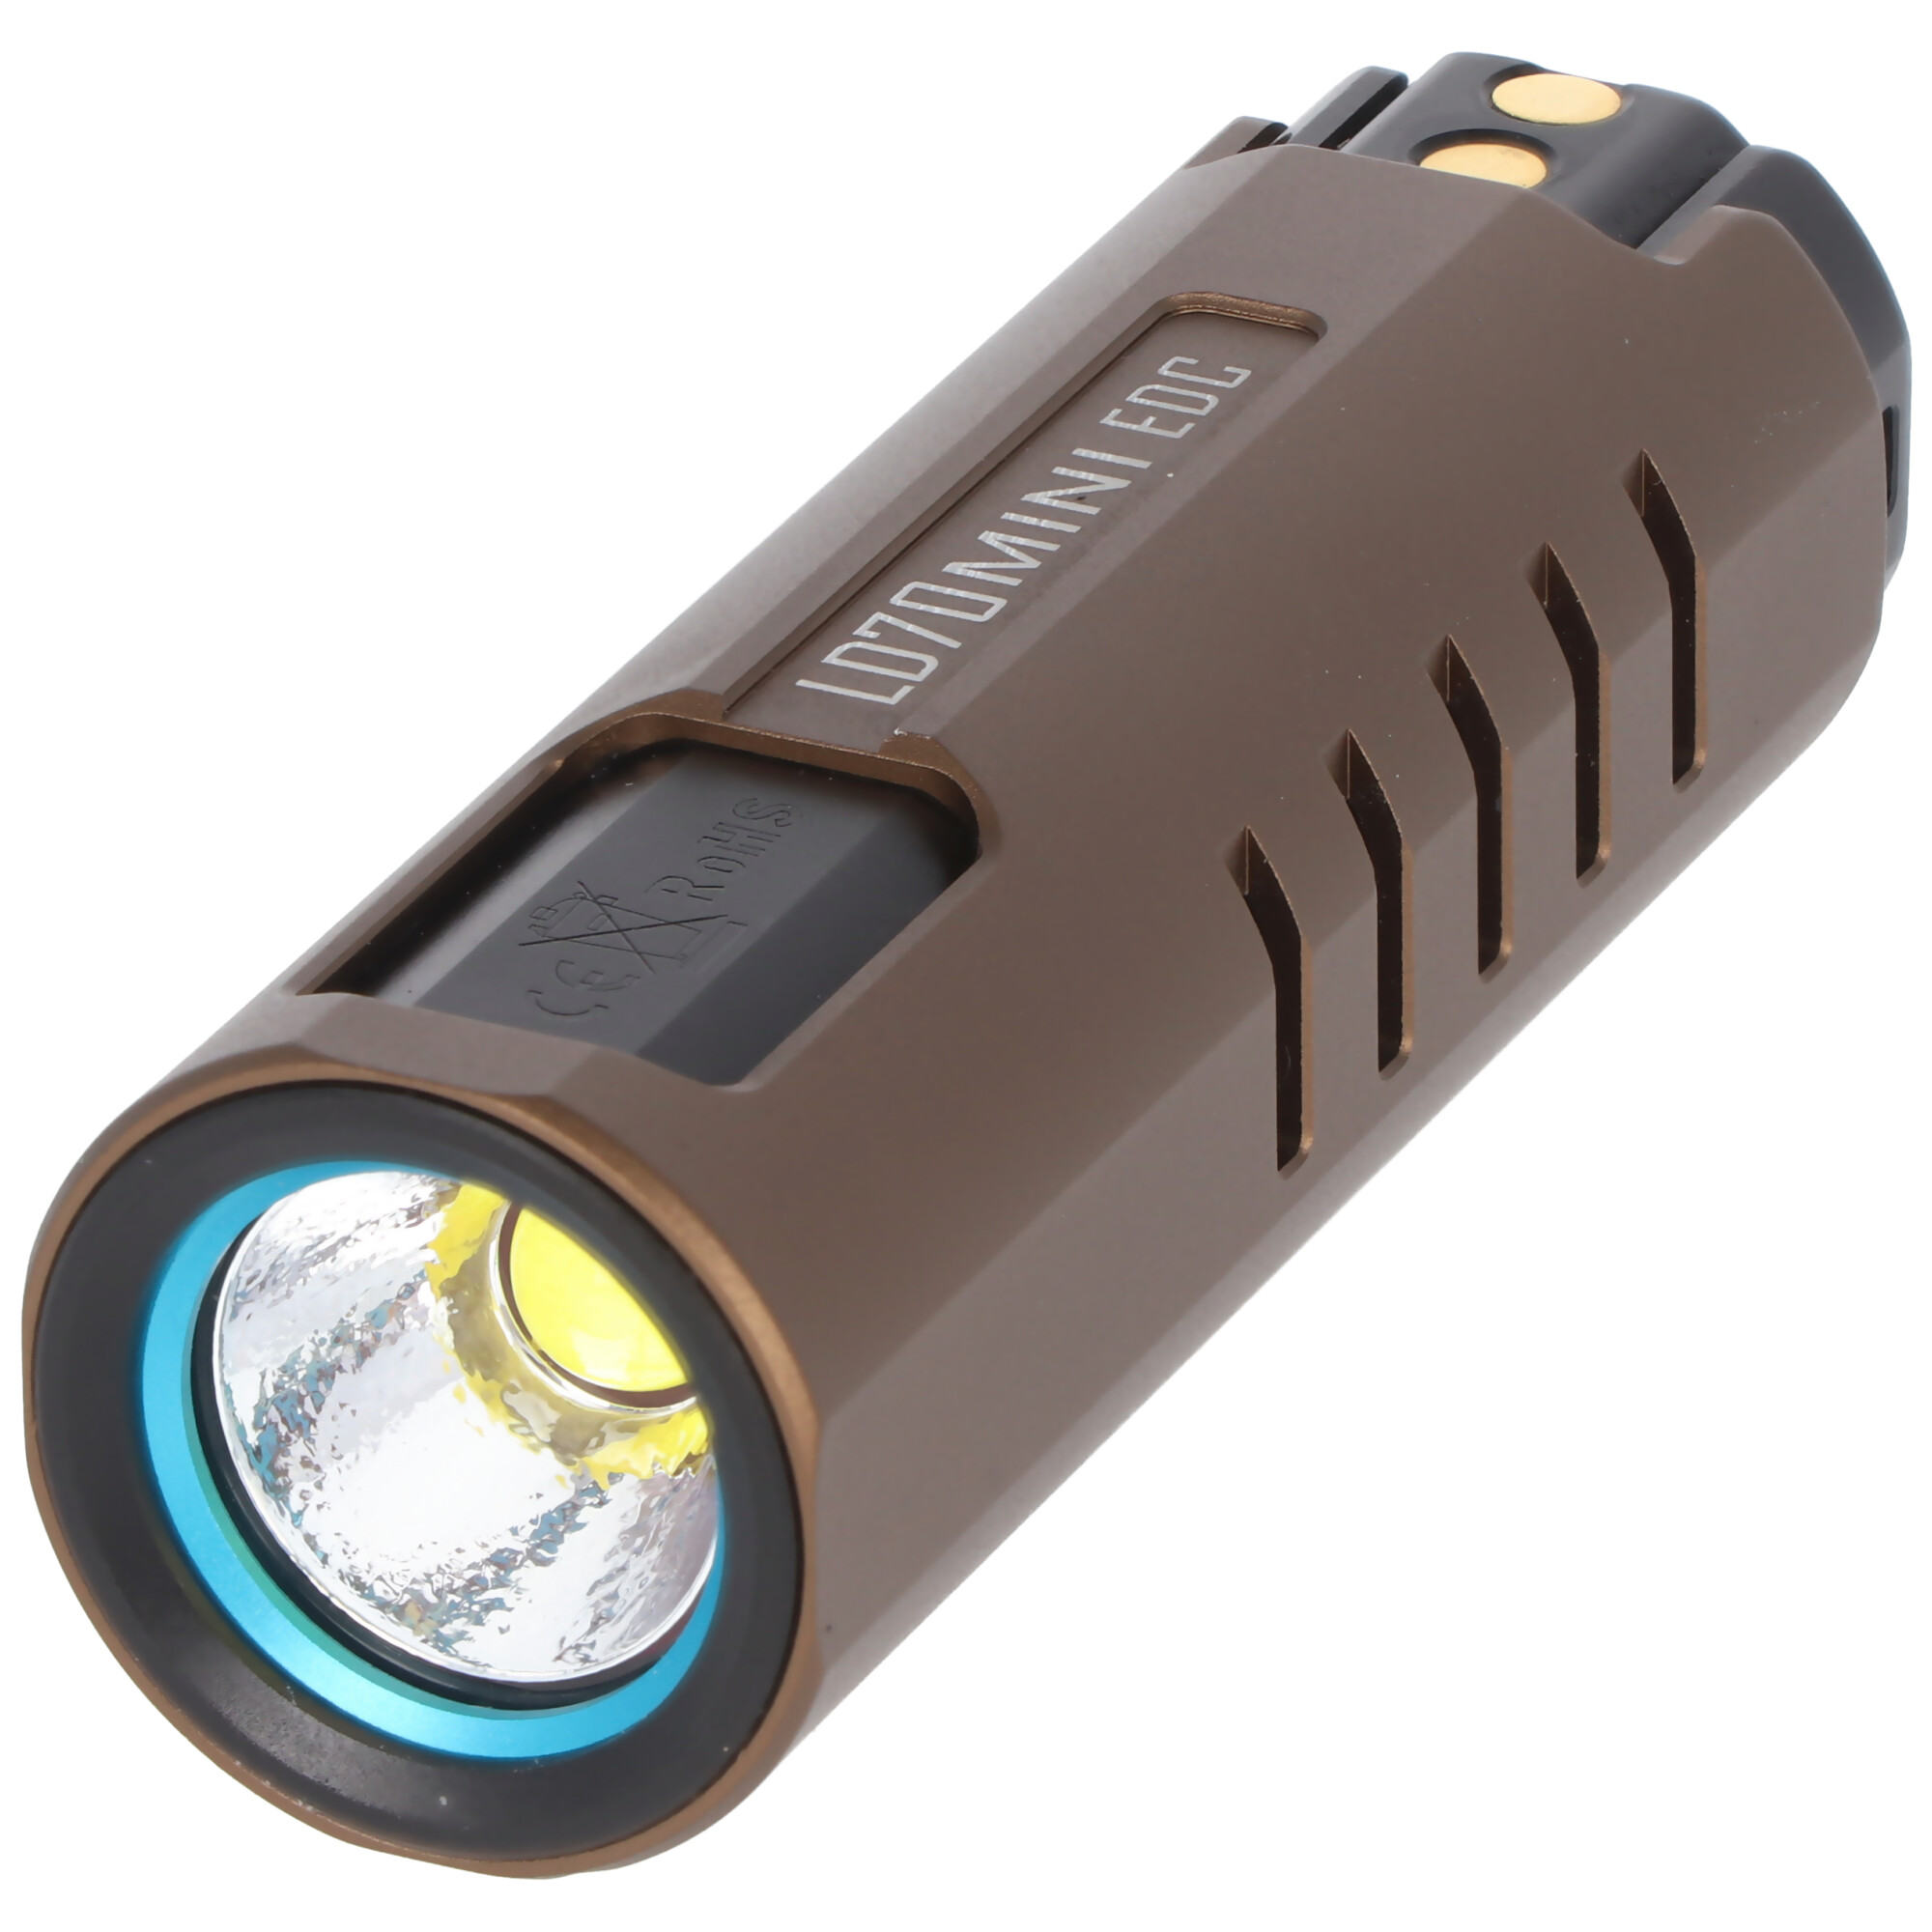 Imalent LD70 Mini EDC LED-Taschenlampe mit 4000 Lumen und eine Leuchtweite von bis zu 203 Metern.